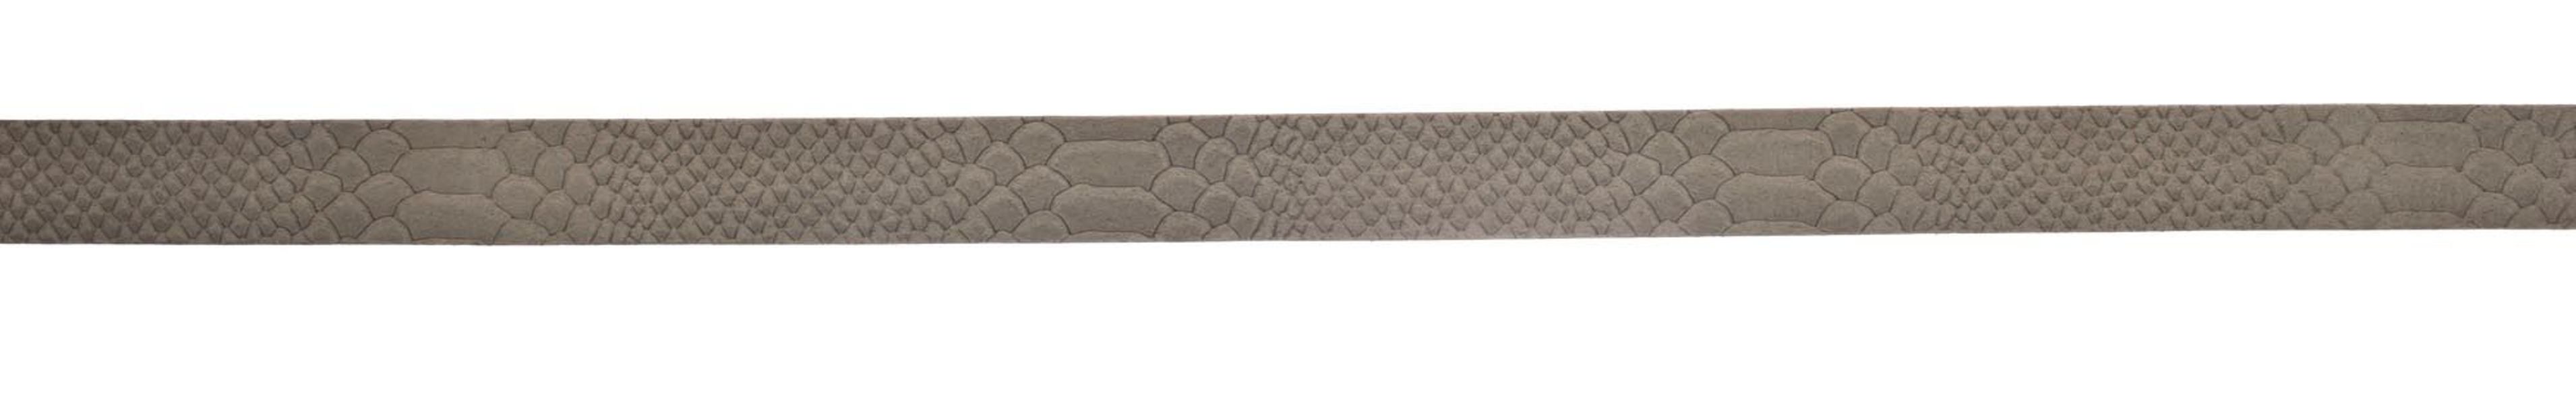 Vanzetti Suede belt - gray (0620)